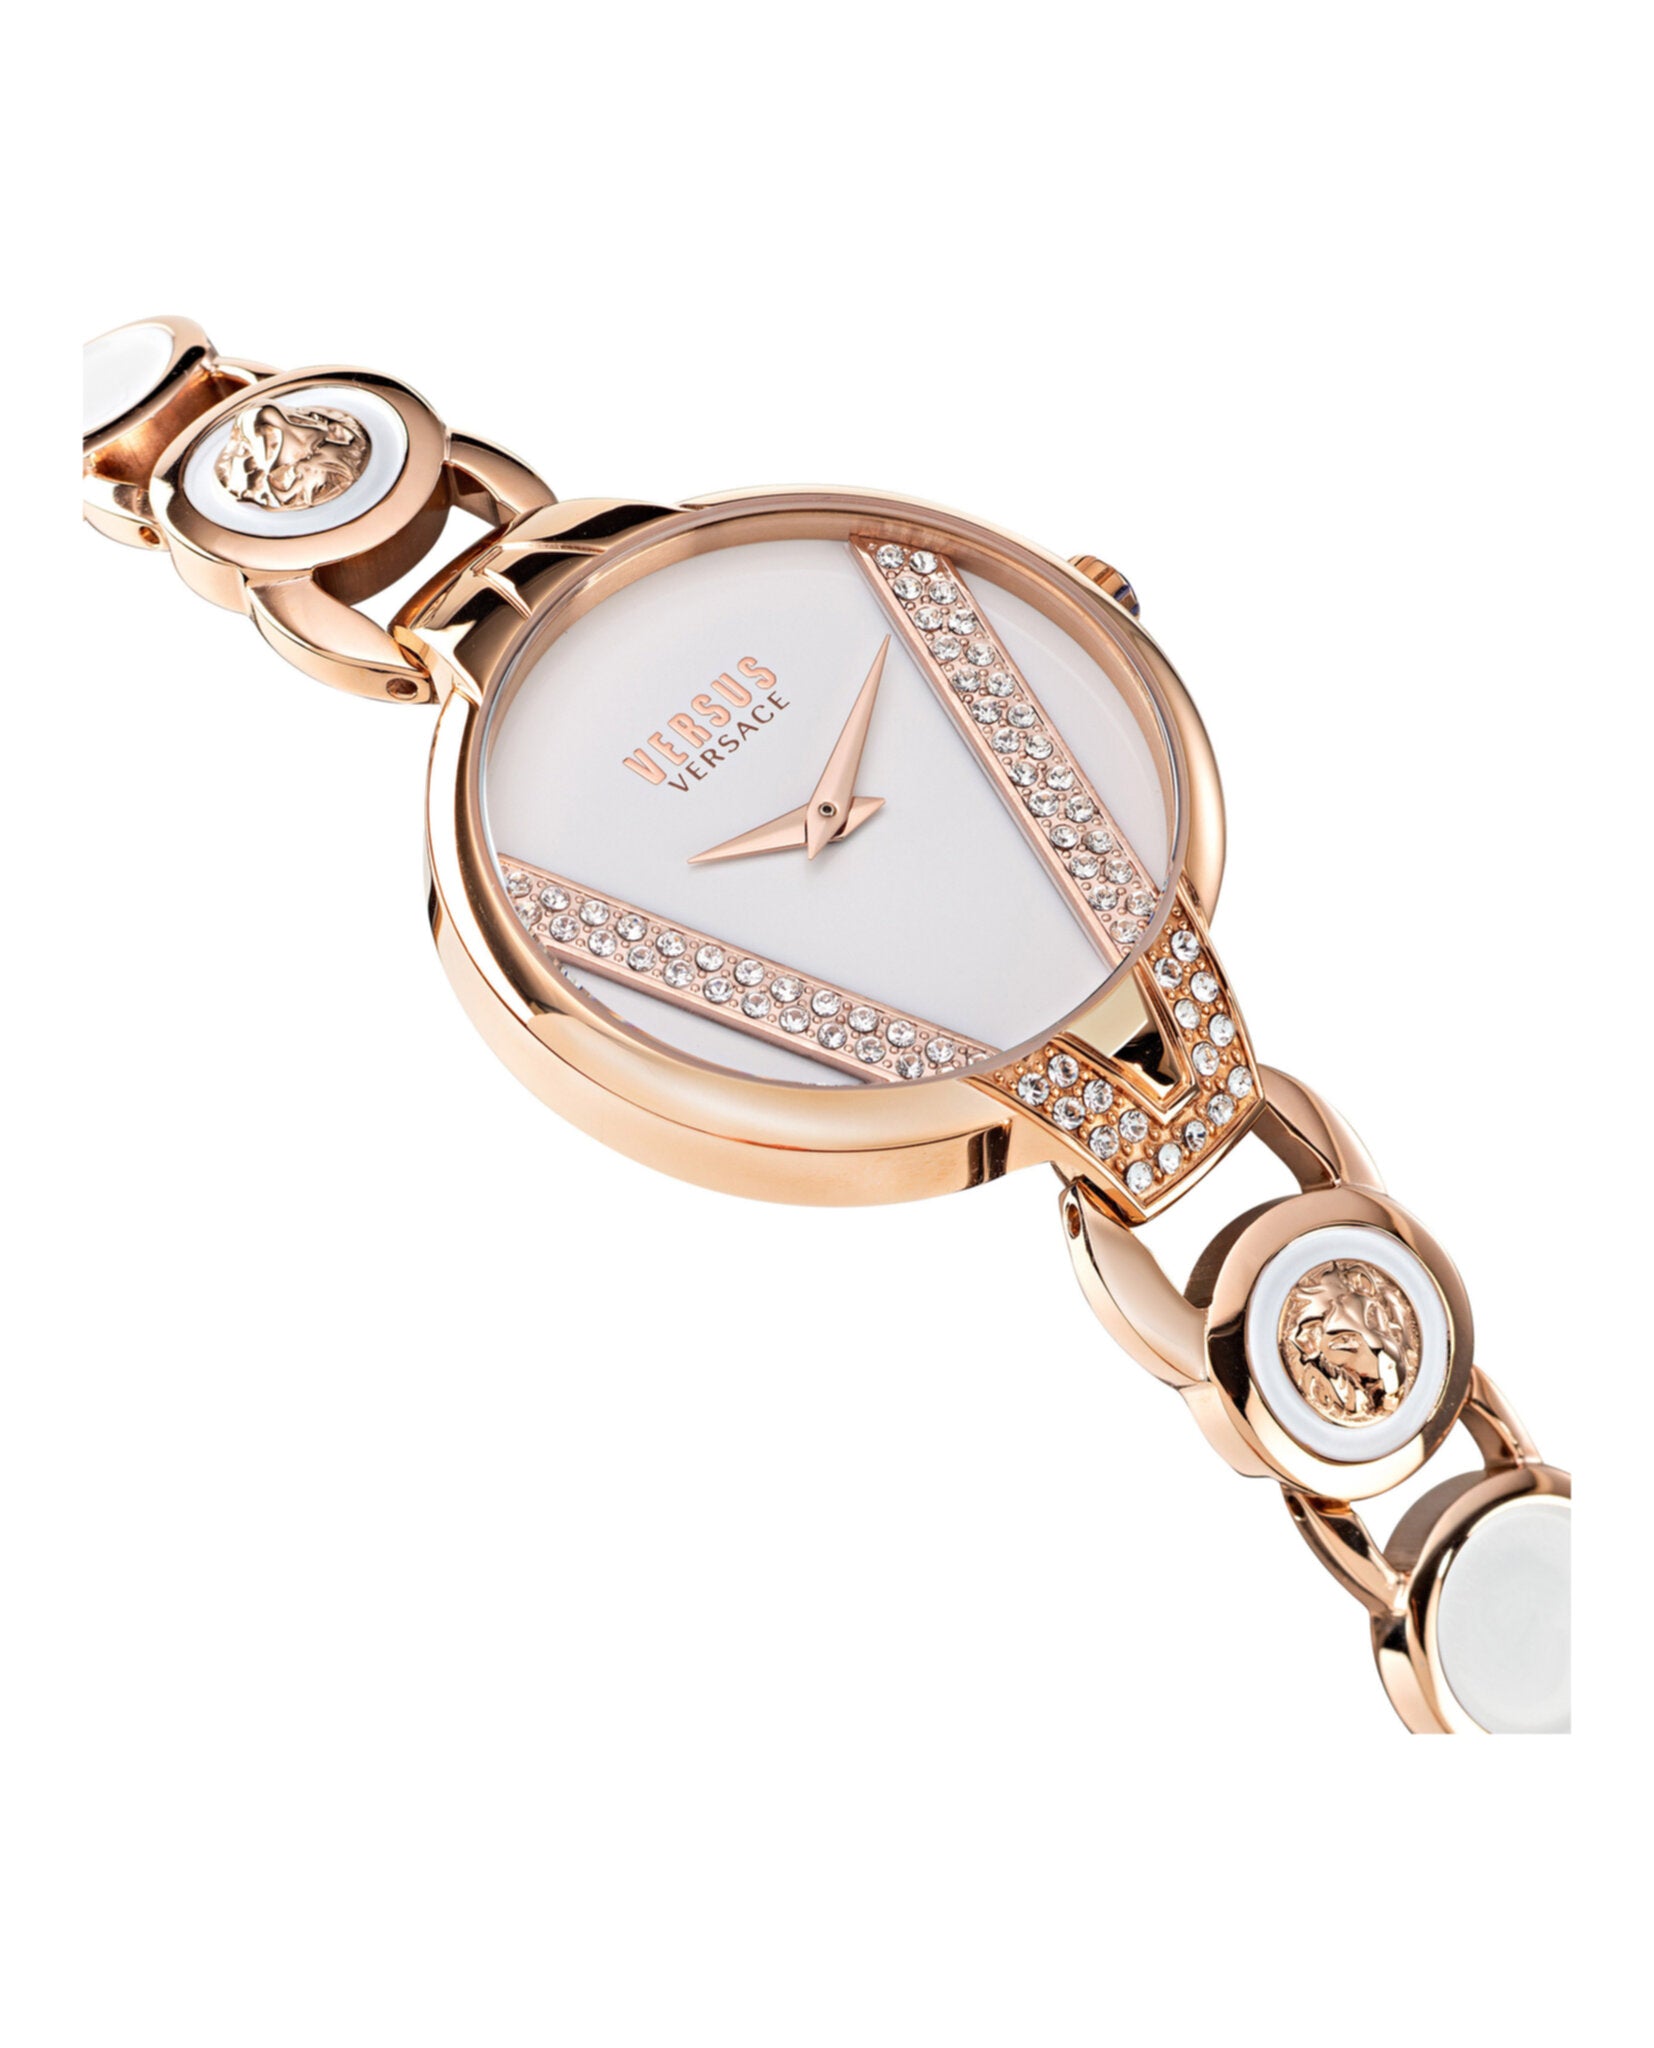 Saint Germain Crystal Watch